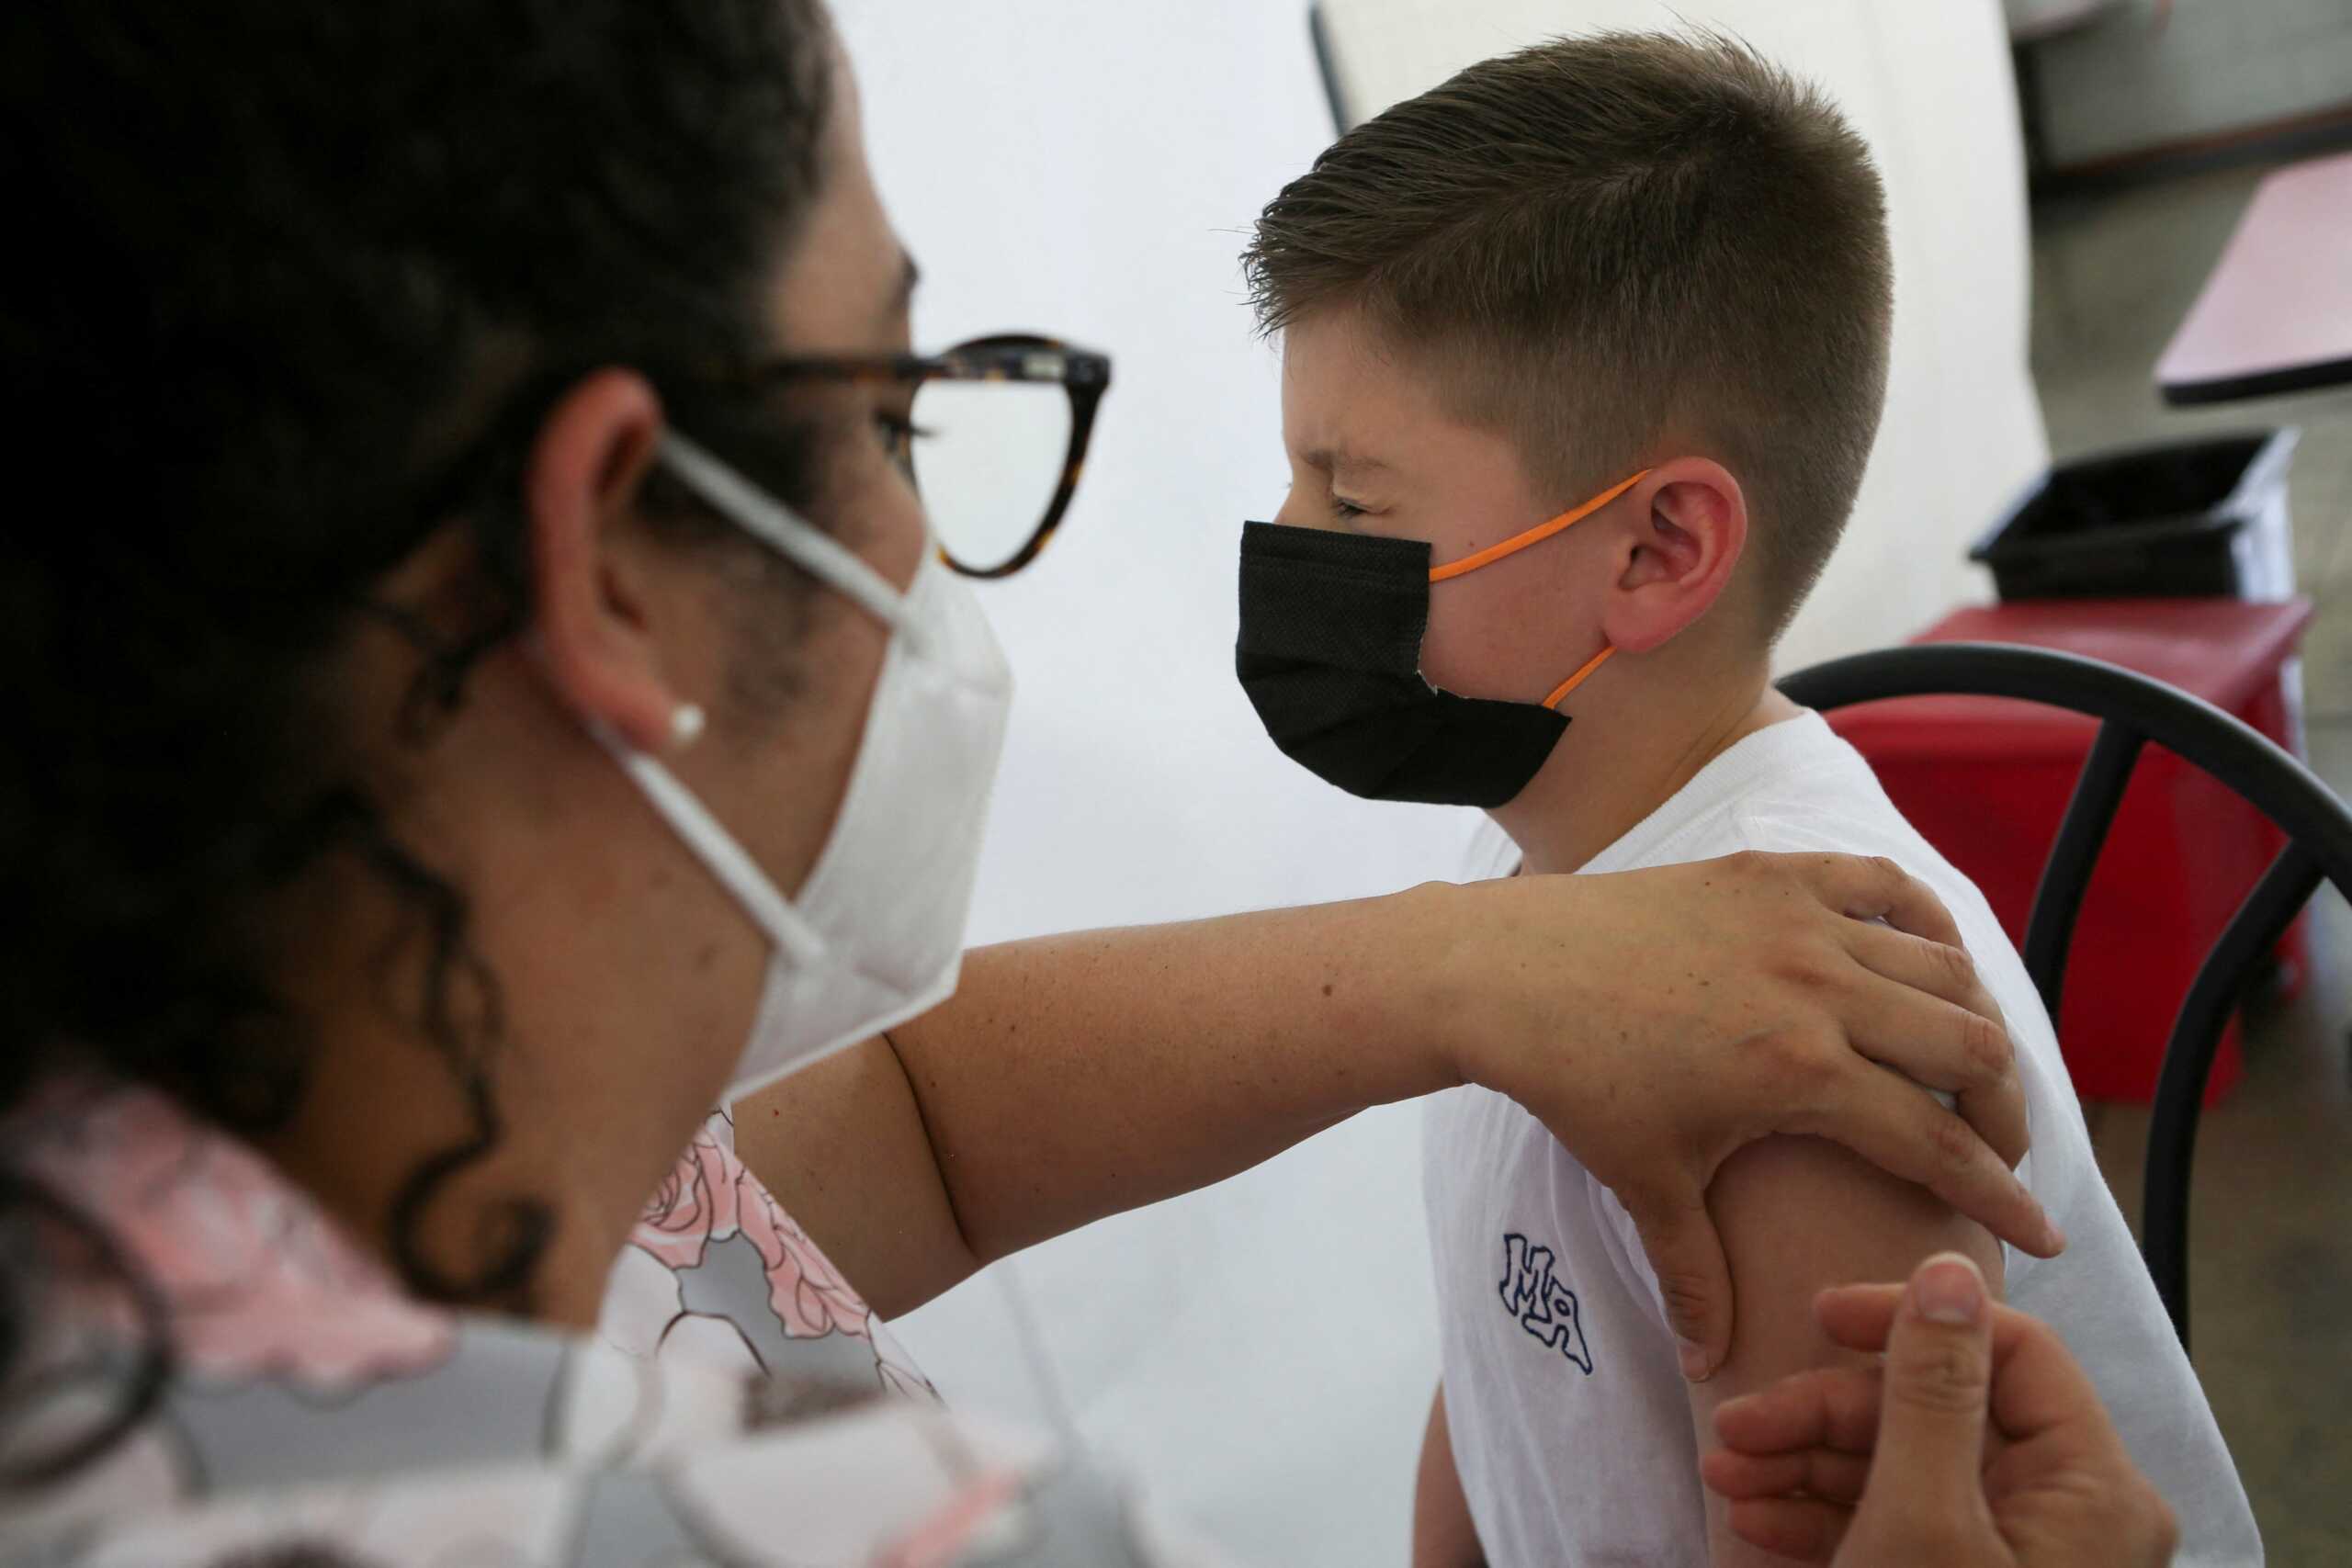 Μηνιγγίτιδα Β: Το 40% των παιδιών έχει εμβολιαστεί με έξοδα των γονιών – «Δεν περισσεύει κανένα παιδί» λένε οι παιδίατροι